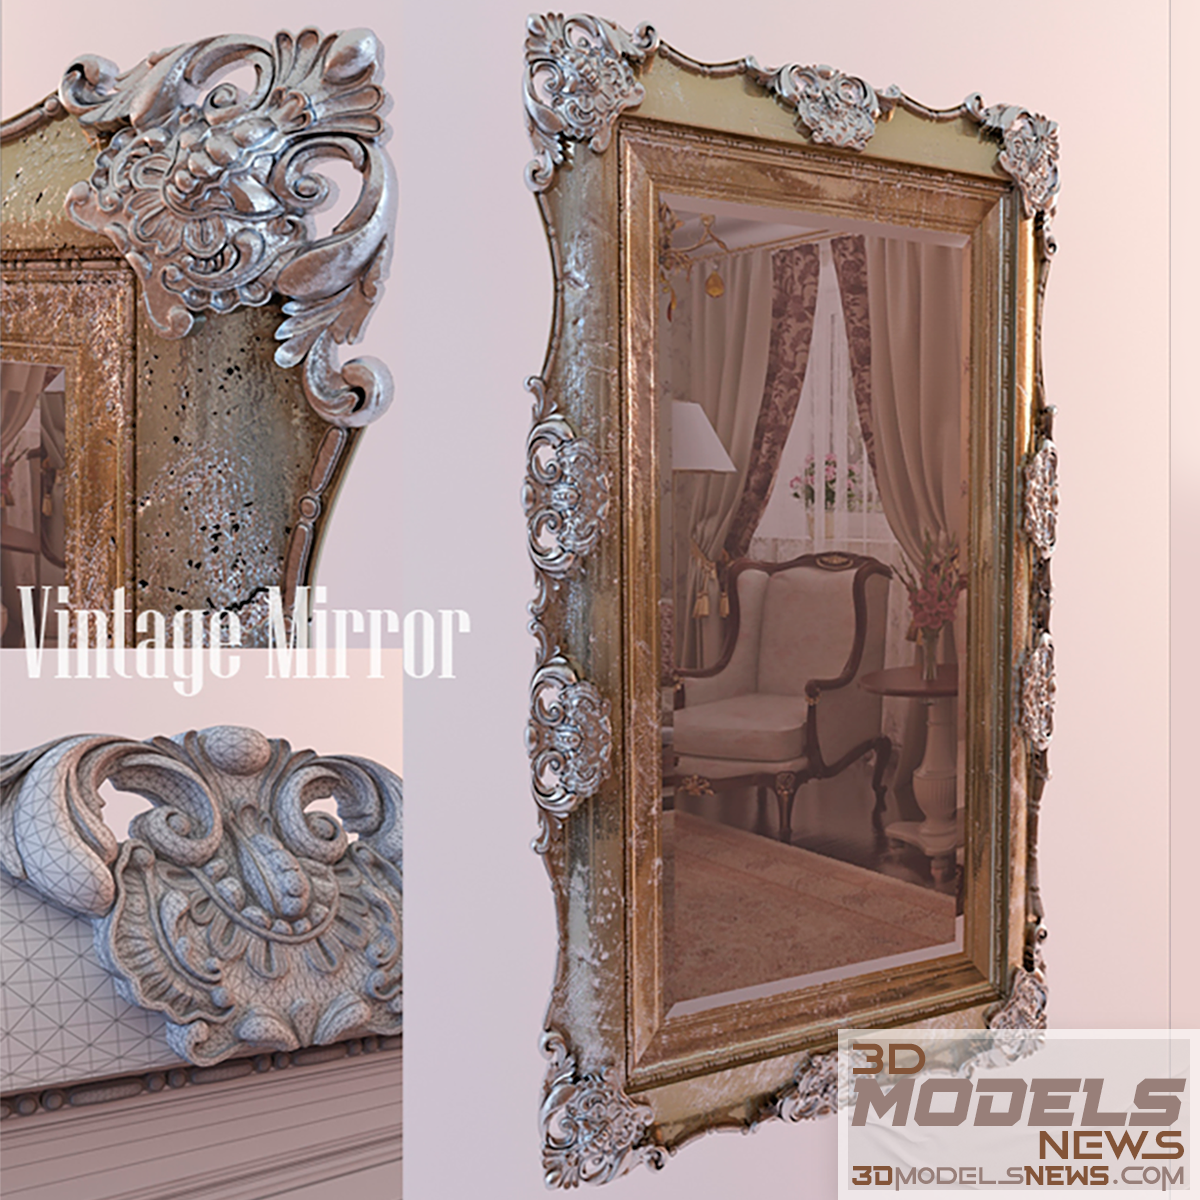 Vintage mirror model